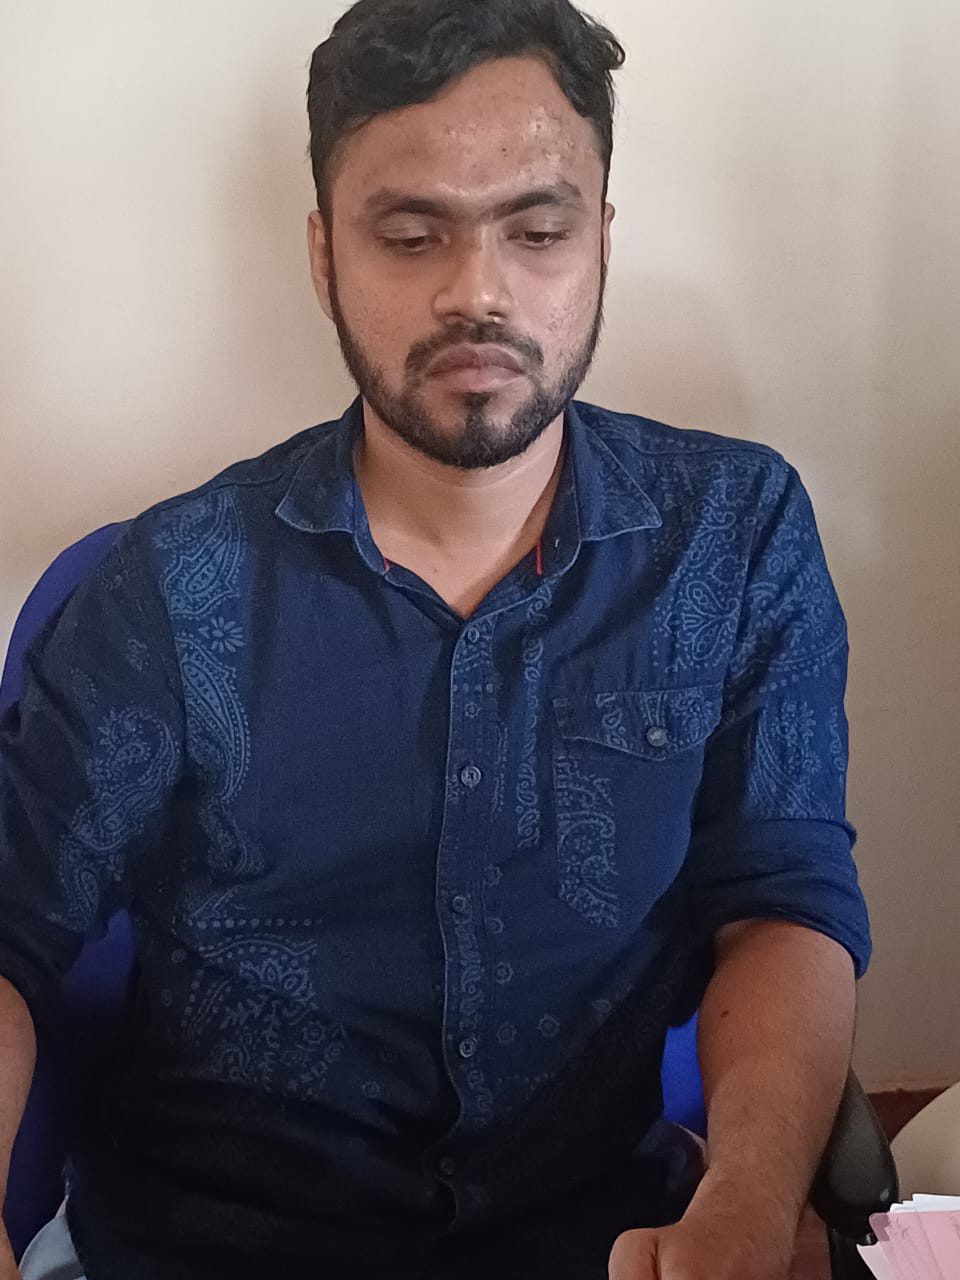 ಮಂಗಳೂರು: ಅಜ್ಜನ ಮರಣಪ್ರಮಾಣ ಪತ್ರ ಪಡೆಯಲು 13 ಸಾವಿರ ಲಂಚ ಸ್ವೀಕರಿಸುತ್ತಿದ್ದಾಗಲೇ ಗ್ರಾಮ ಆಡಳಿತ ಅಧಿಕಾರಿ ಲೋಕಾಯುಕ್ತ ಬಲೆಗೆ 